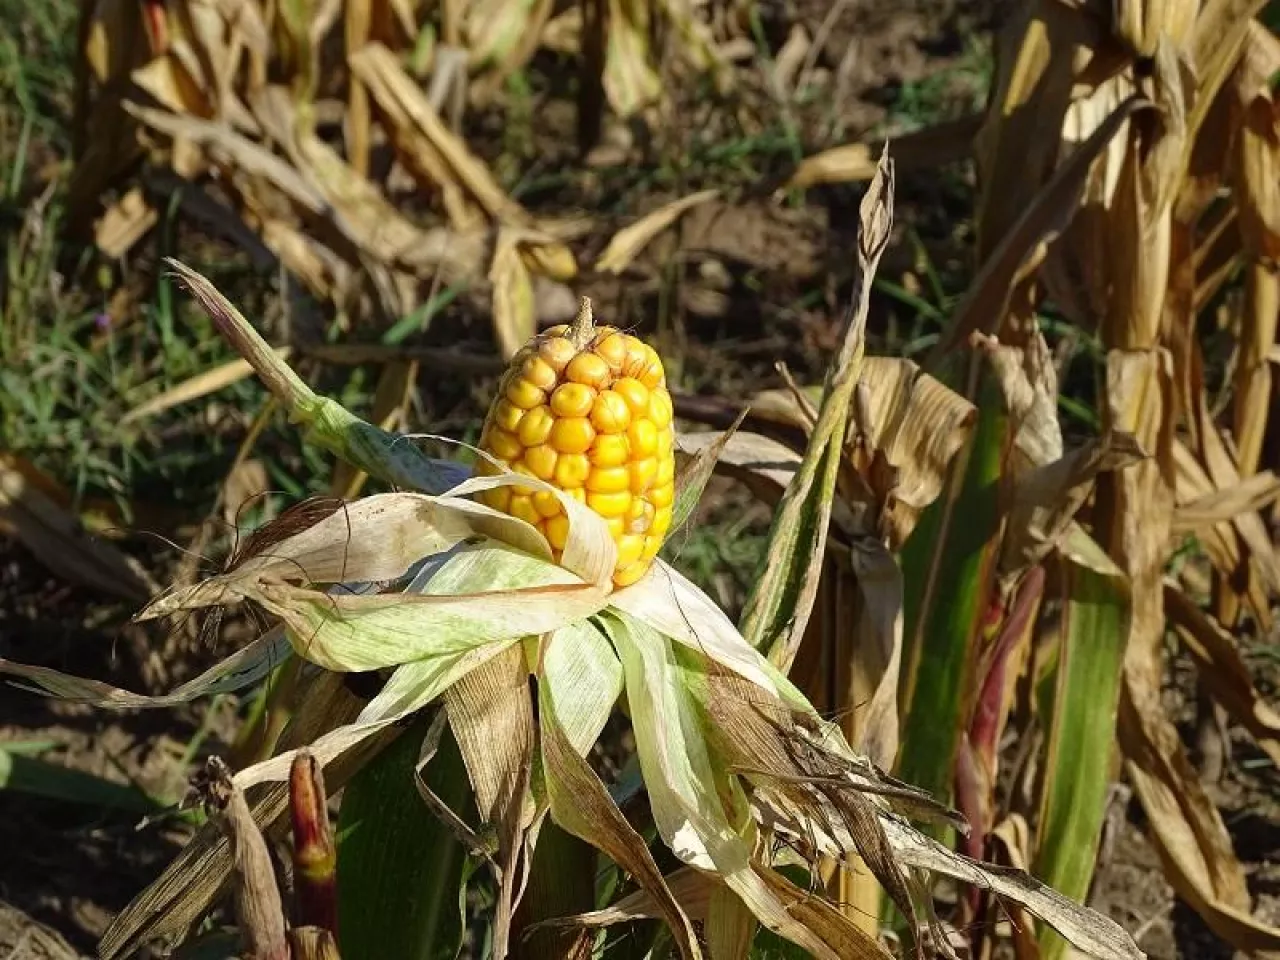 susza w kukurydzy ziarnowej niewyksztalcona kolba